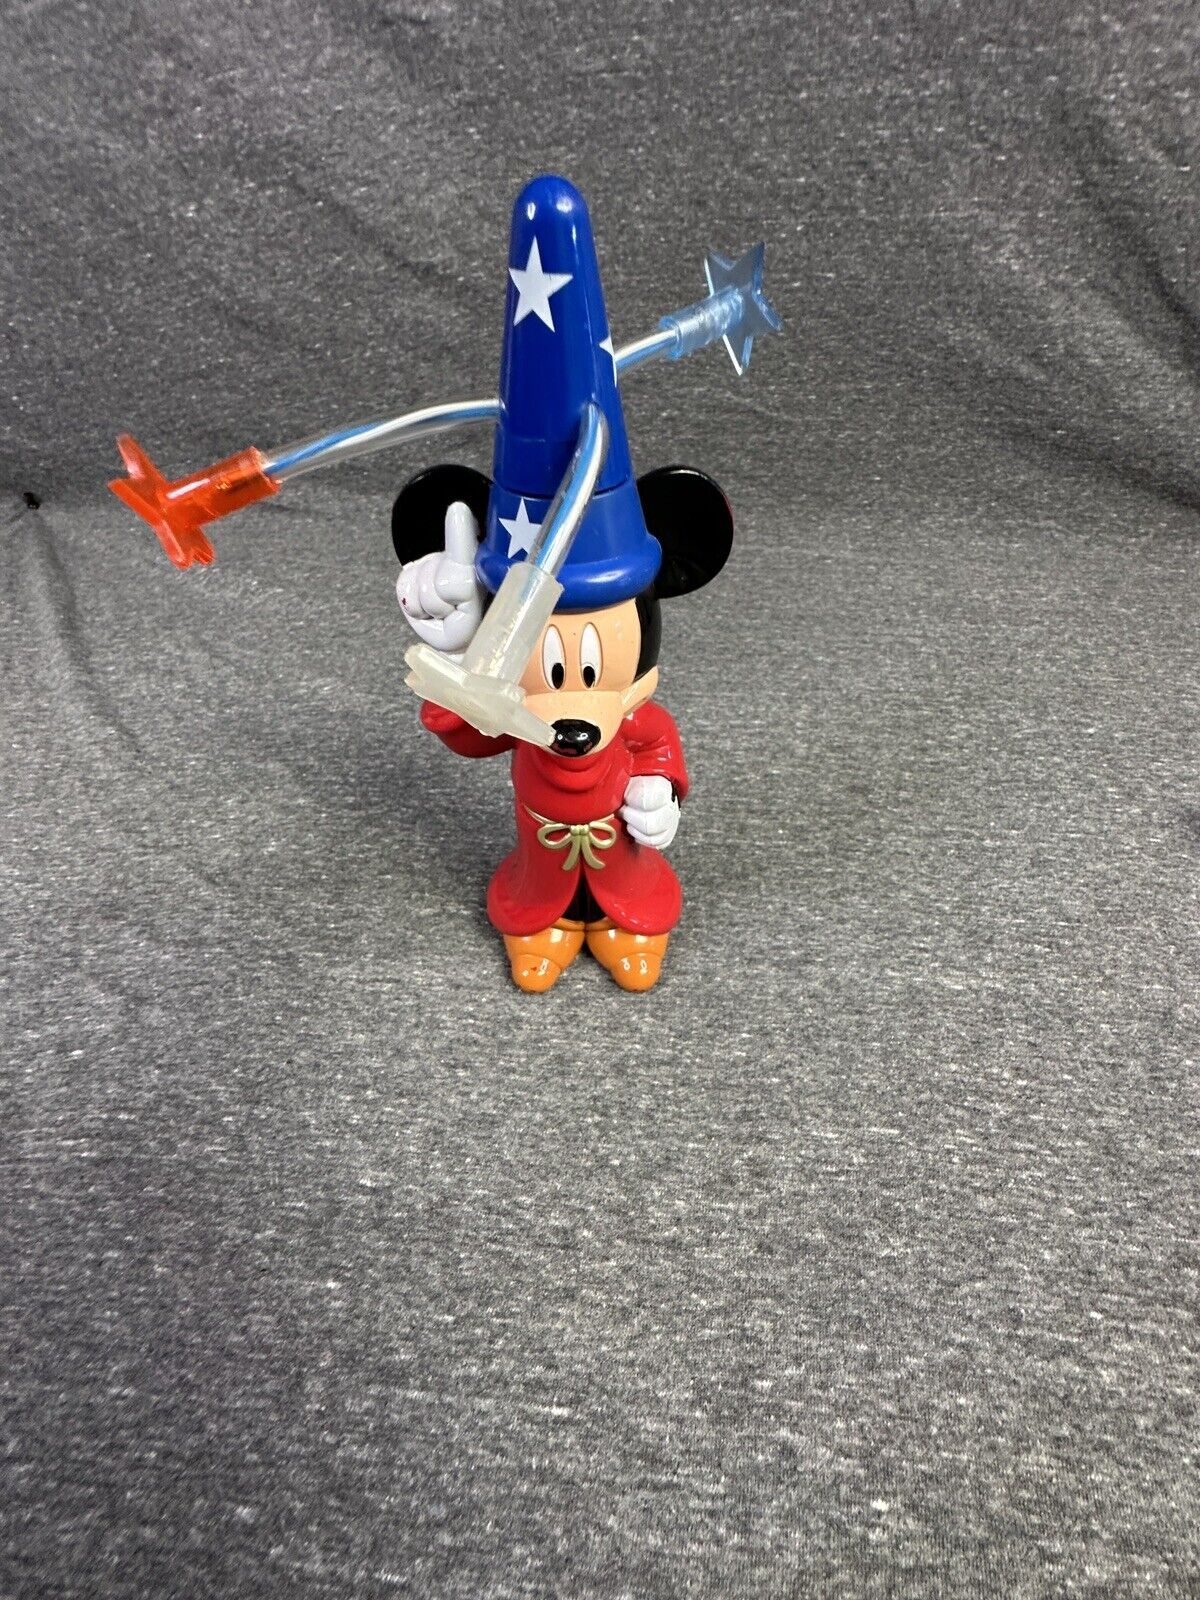 Vintage Disney Parks Sorcerer Mickey Light Up Spinning Toy WORKS